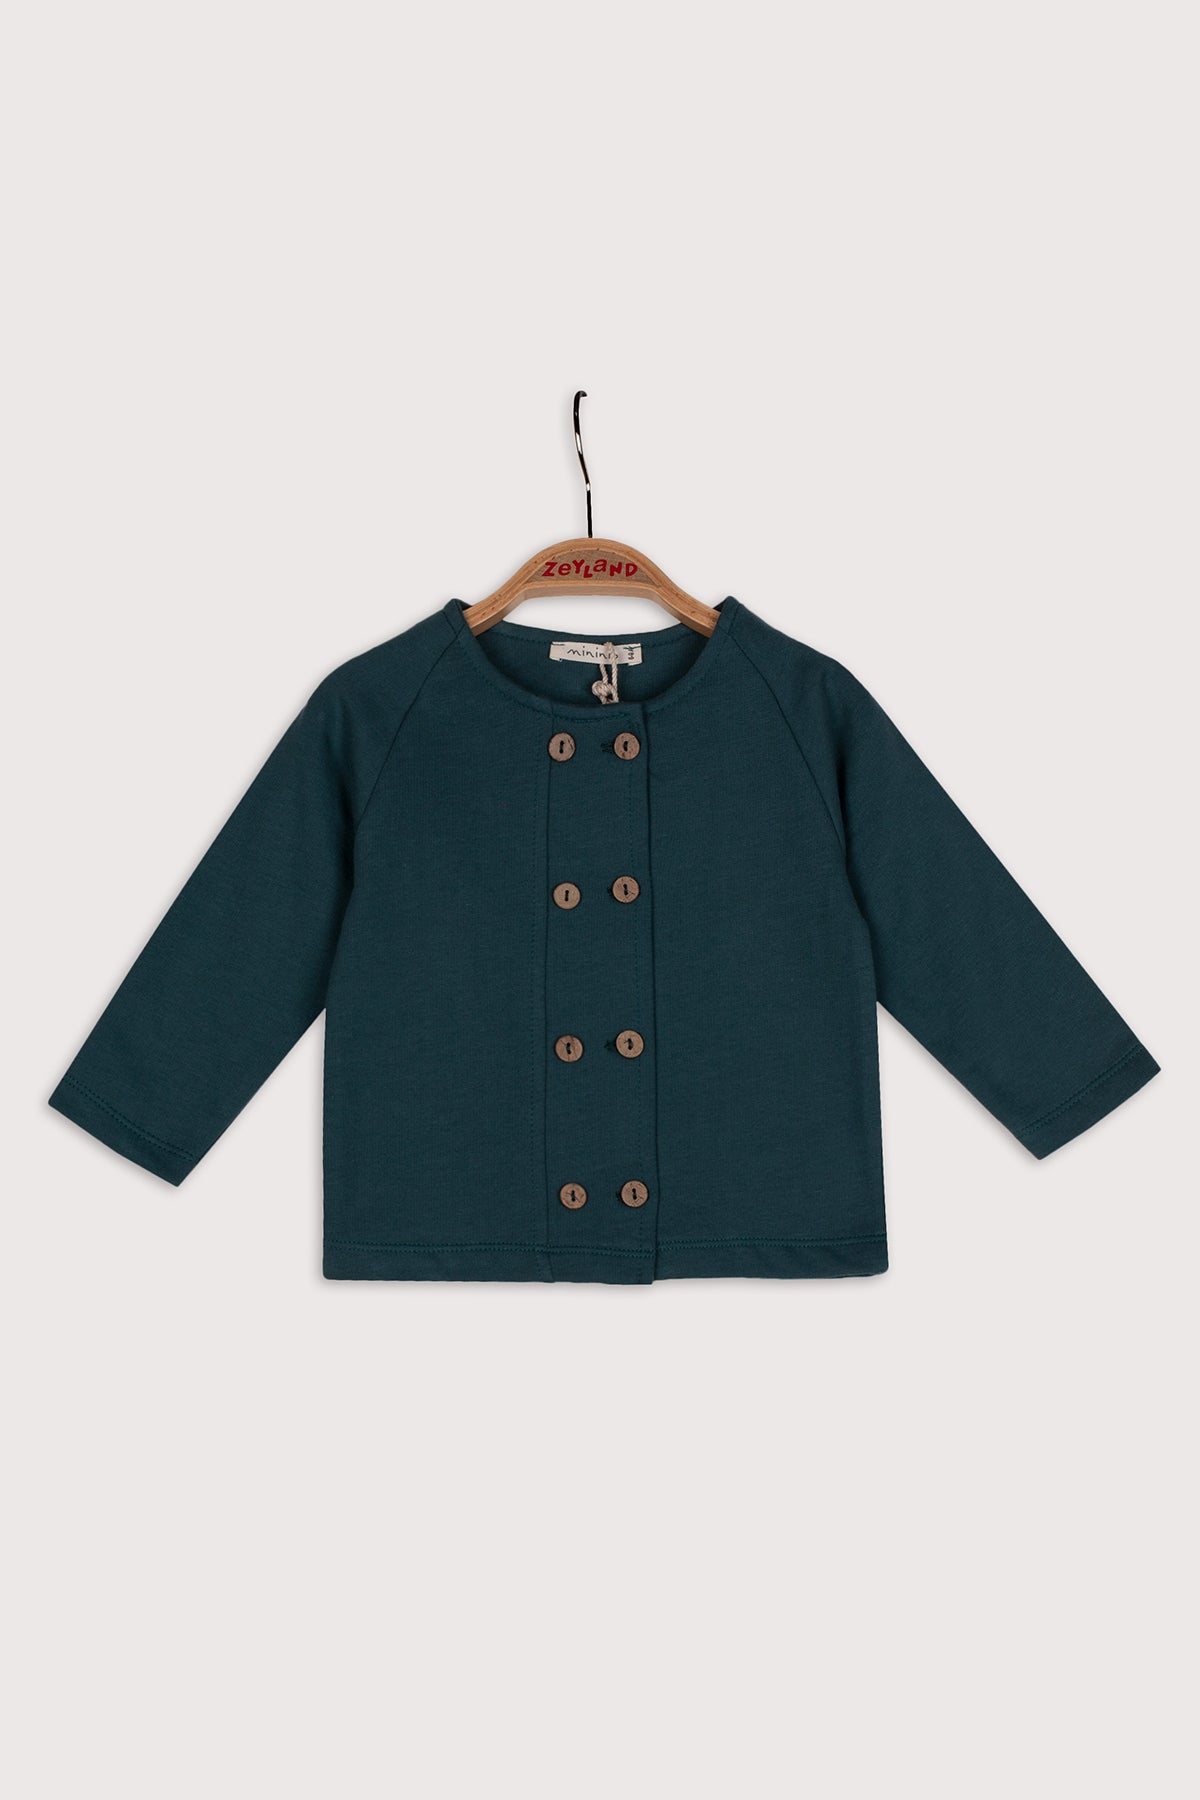 Kız Bebek Yeşil Düğmeli Örme Ceket (6ay-4yaş)-0